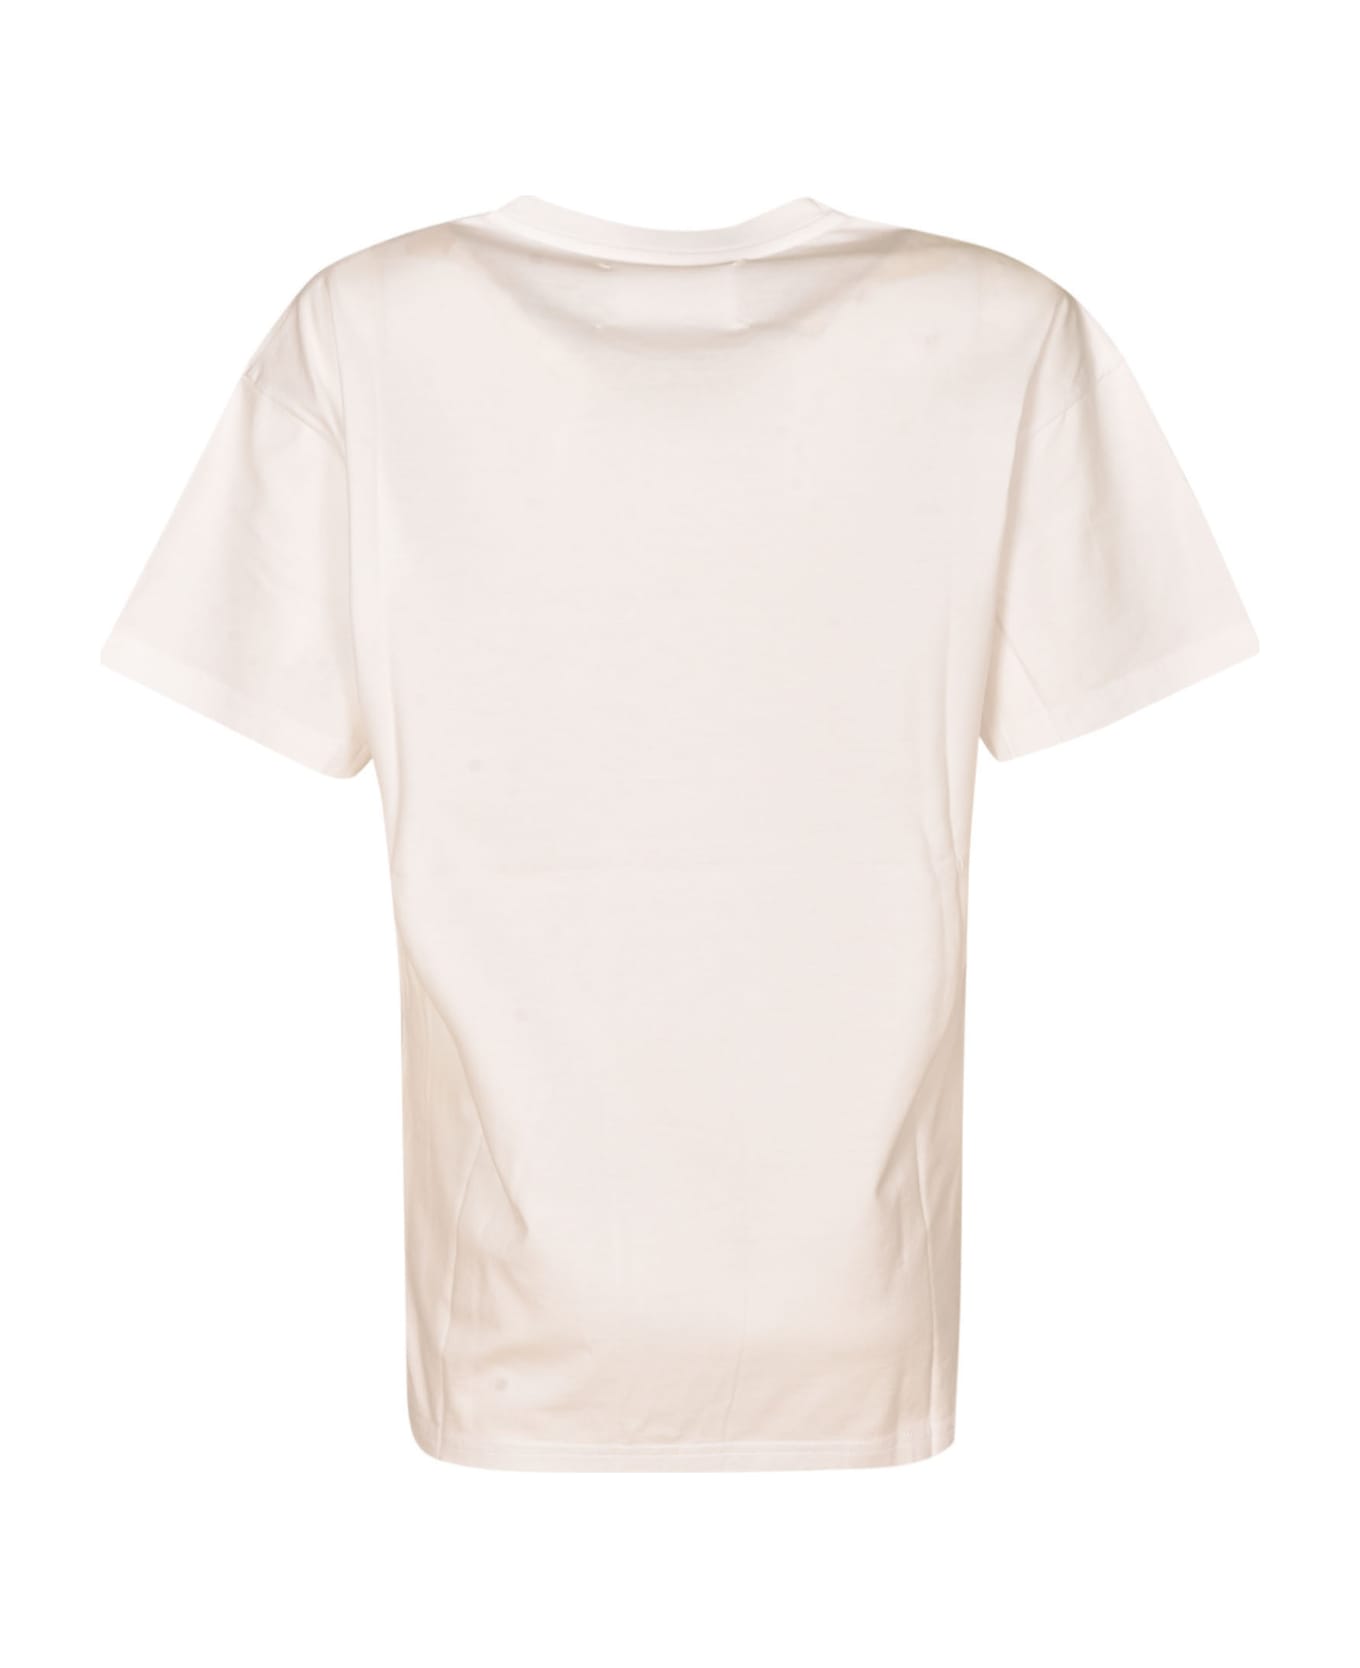 Maison Margiela Round Neck T-shirt - 100